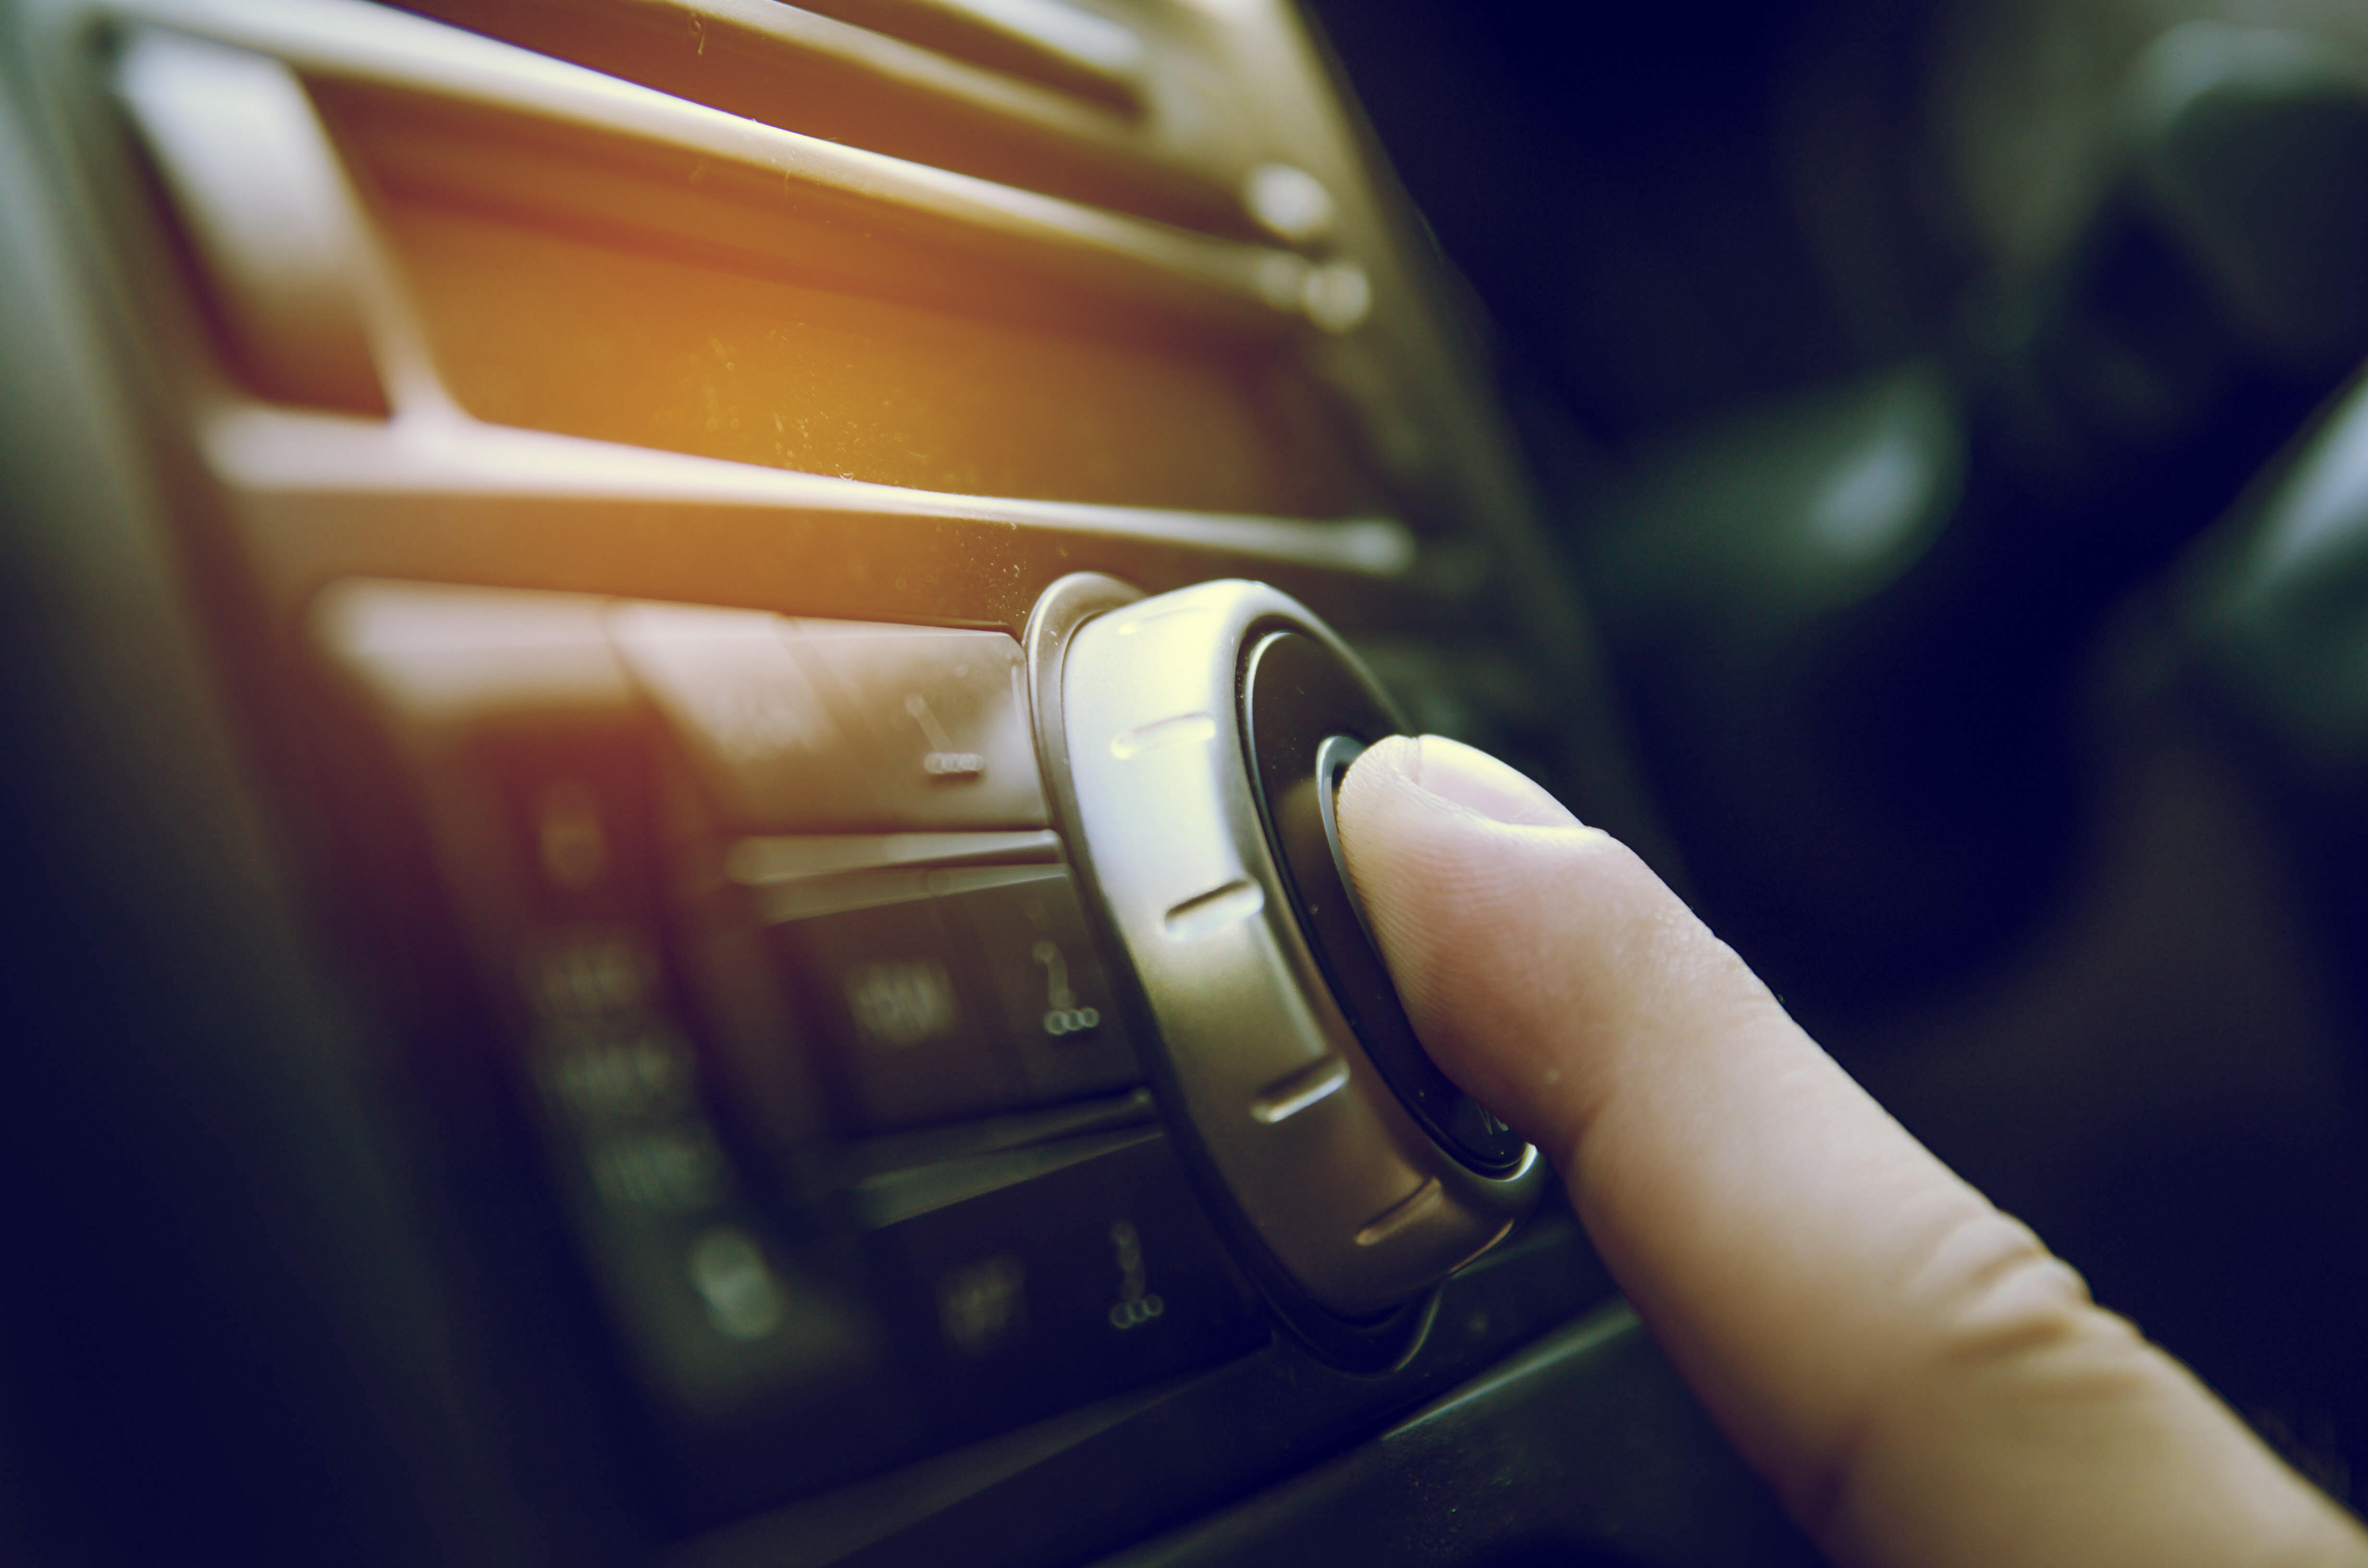 Радио в машине. Радиоприемник в машине. Прослушивание музыки в машине. Музыка в машину слушать. Человек слушает музыку в машине.